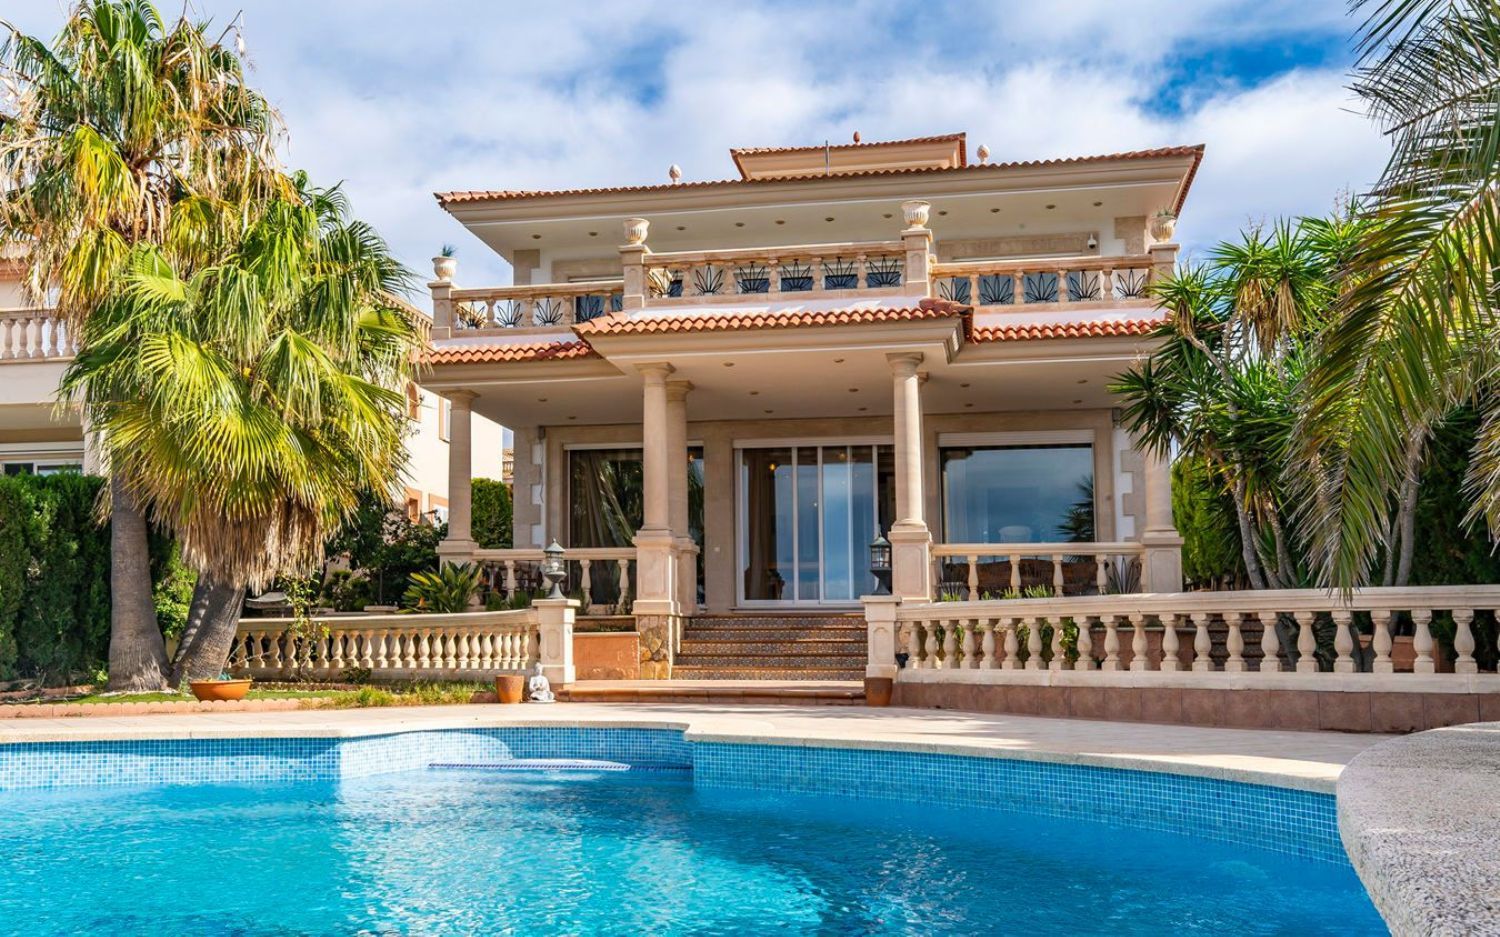 Casa en venta en primera línea de mar en Badia Gran, en Mallorca